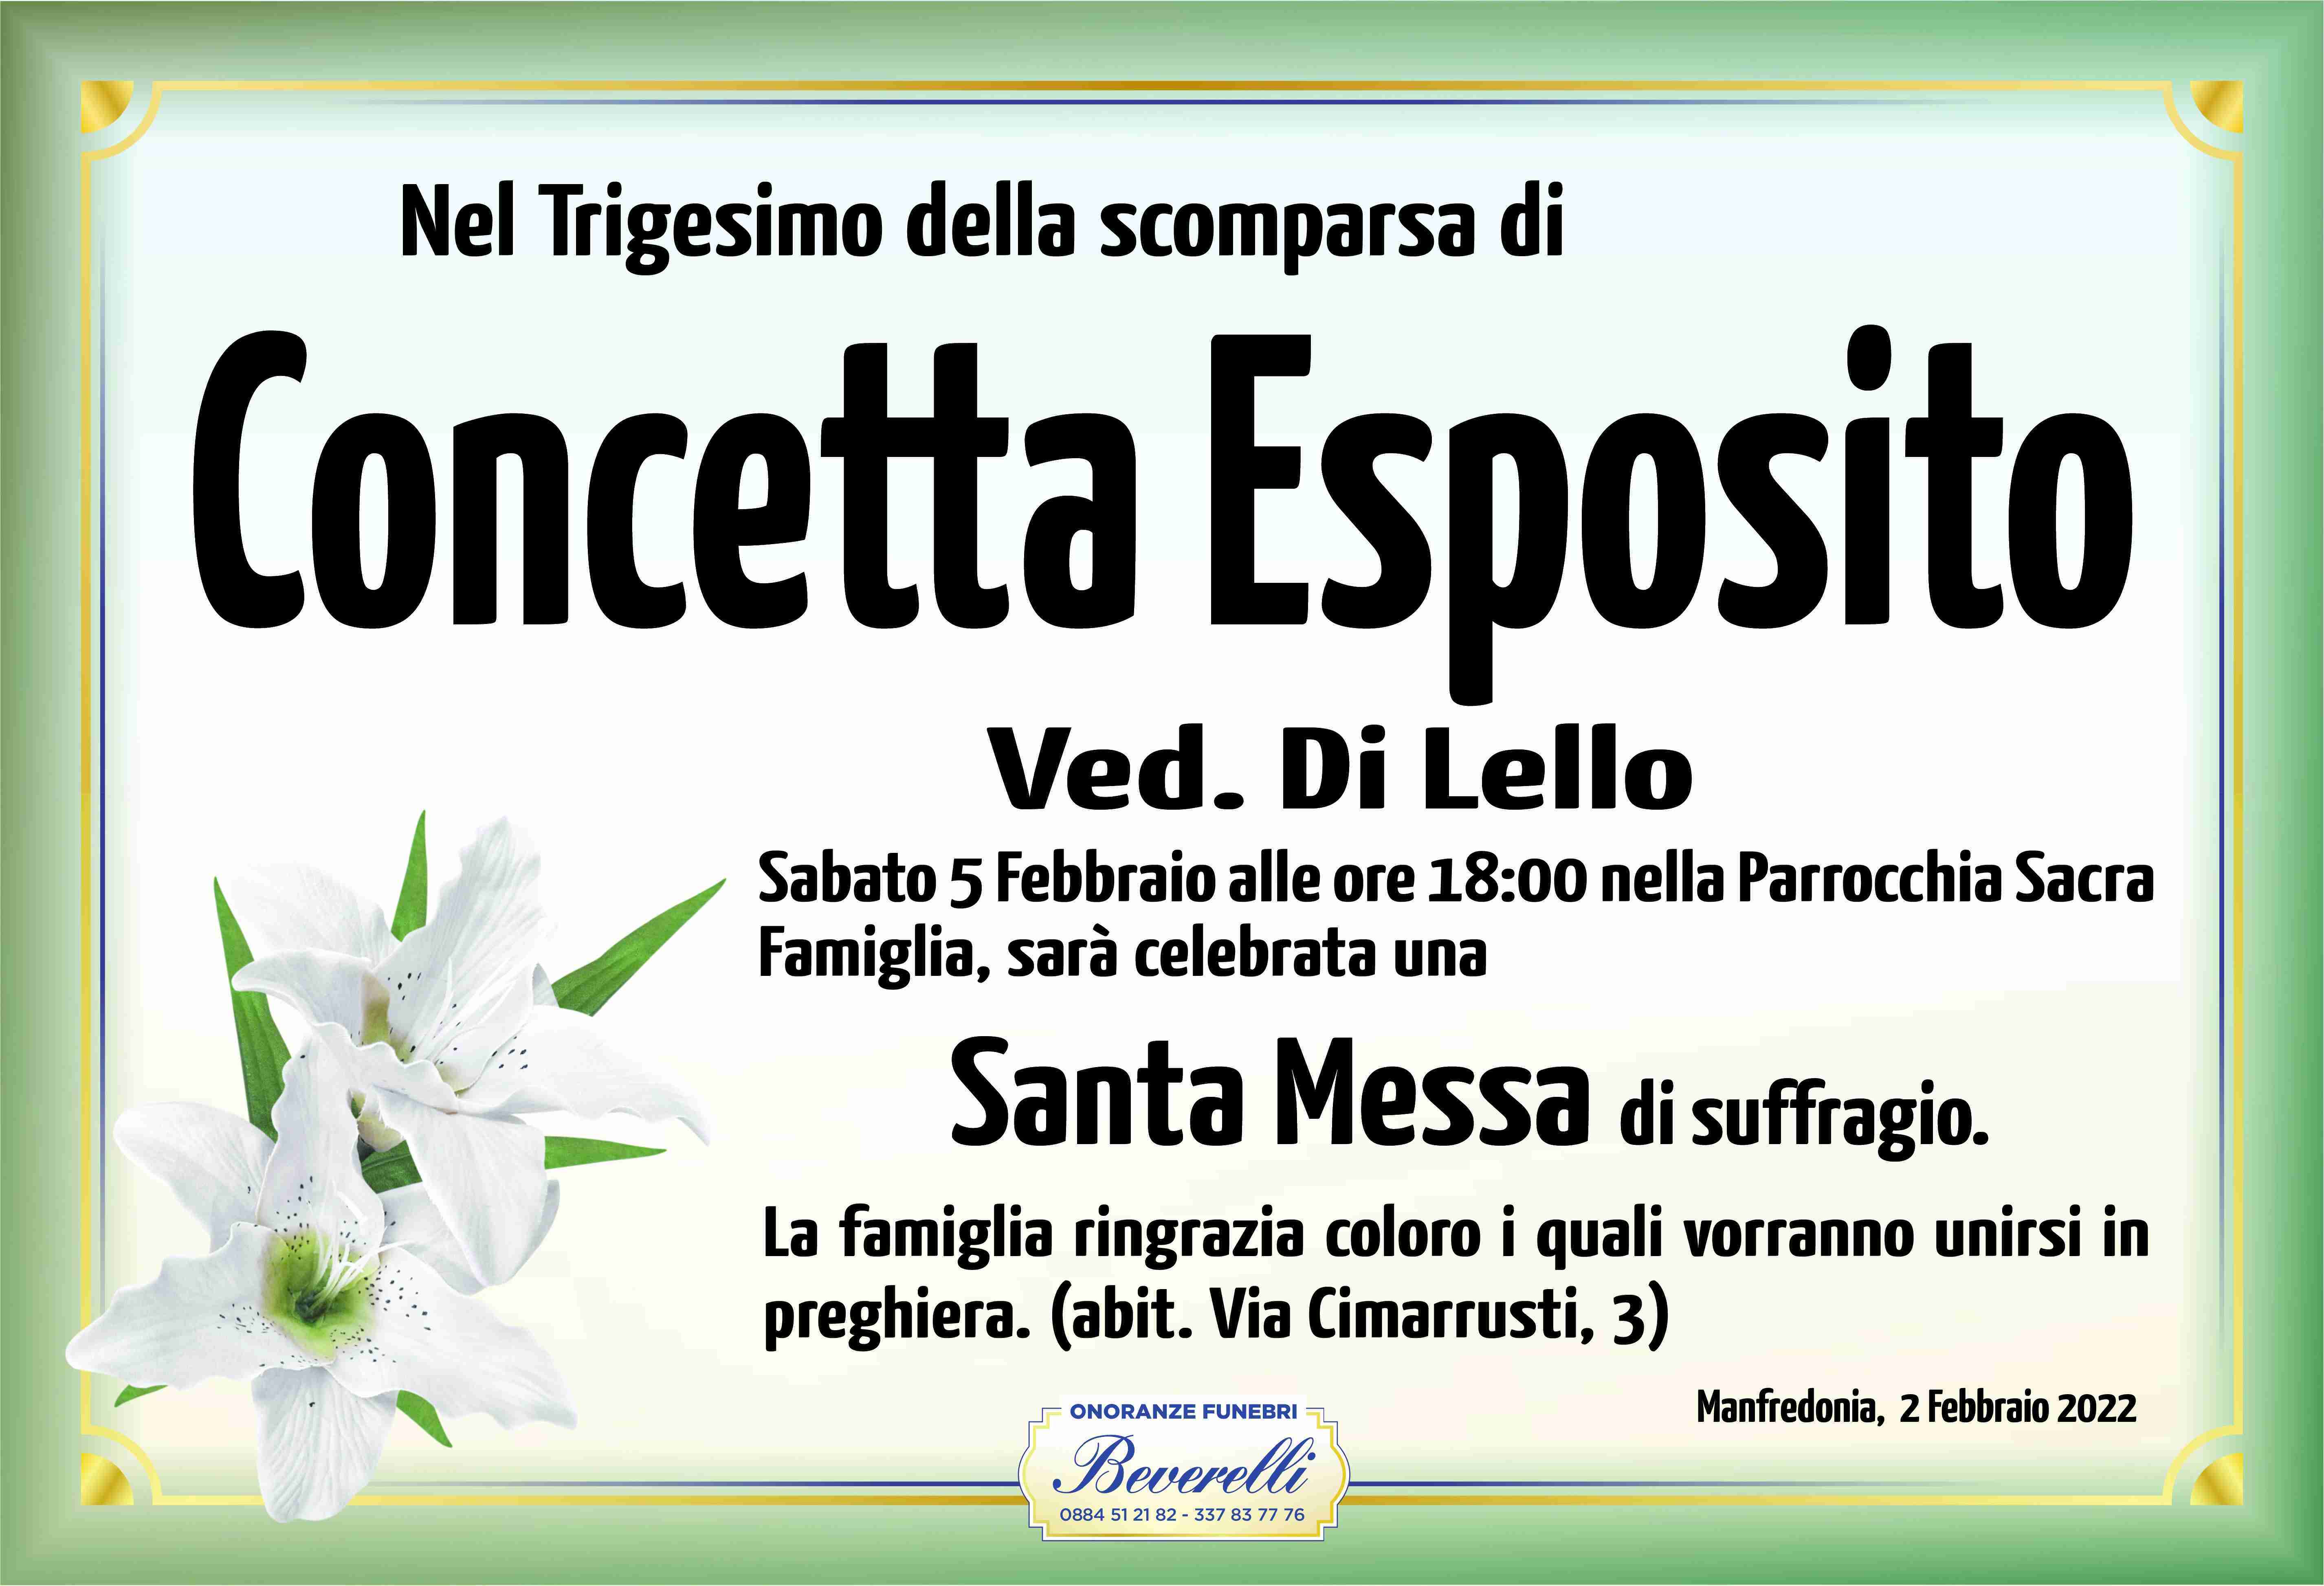 Concetta Esposito